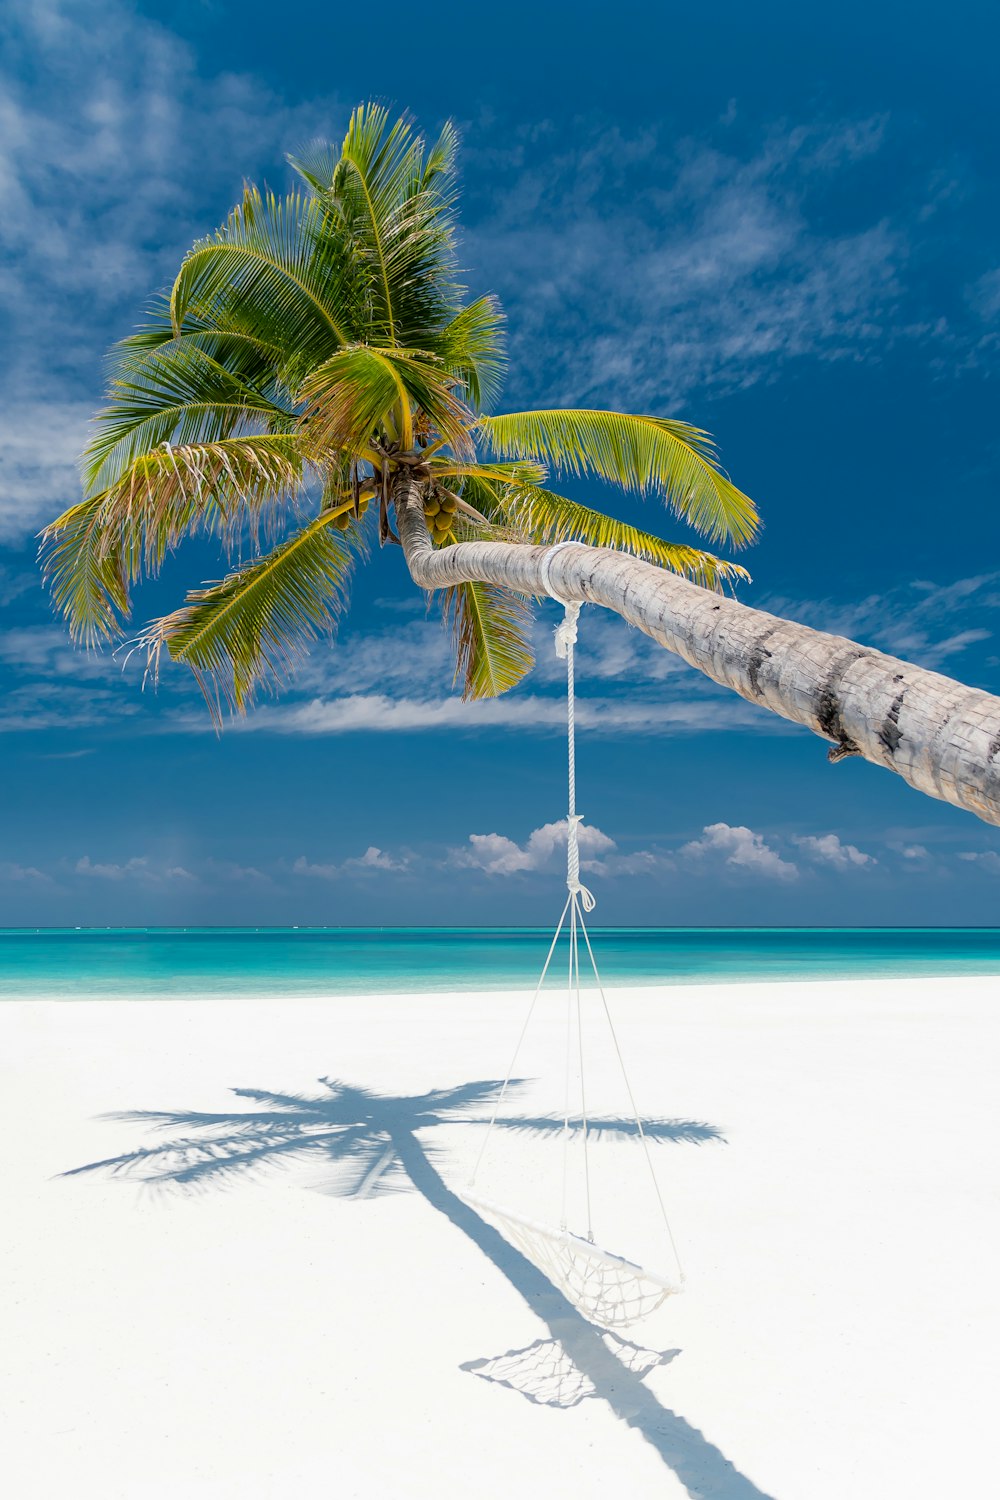 gebogene Kokospalme mit Hängematte in Ufernähe während des Tages